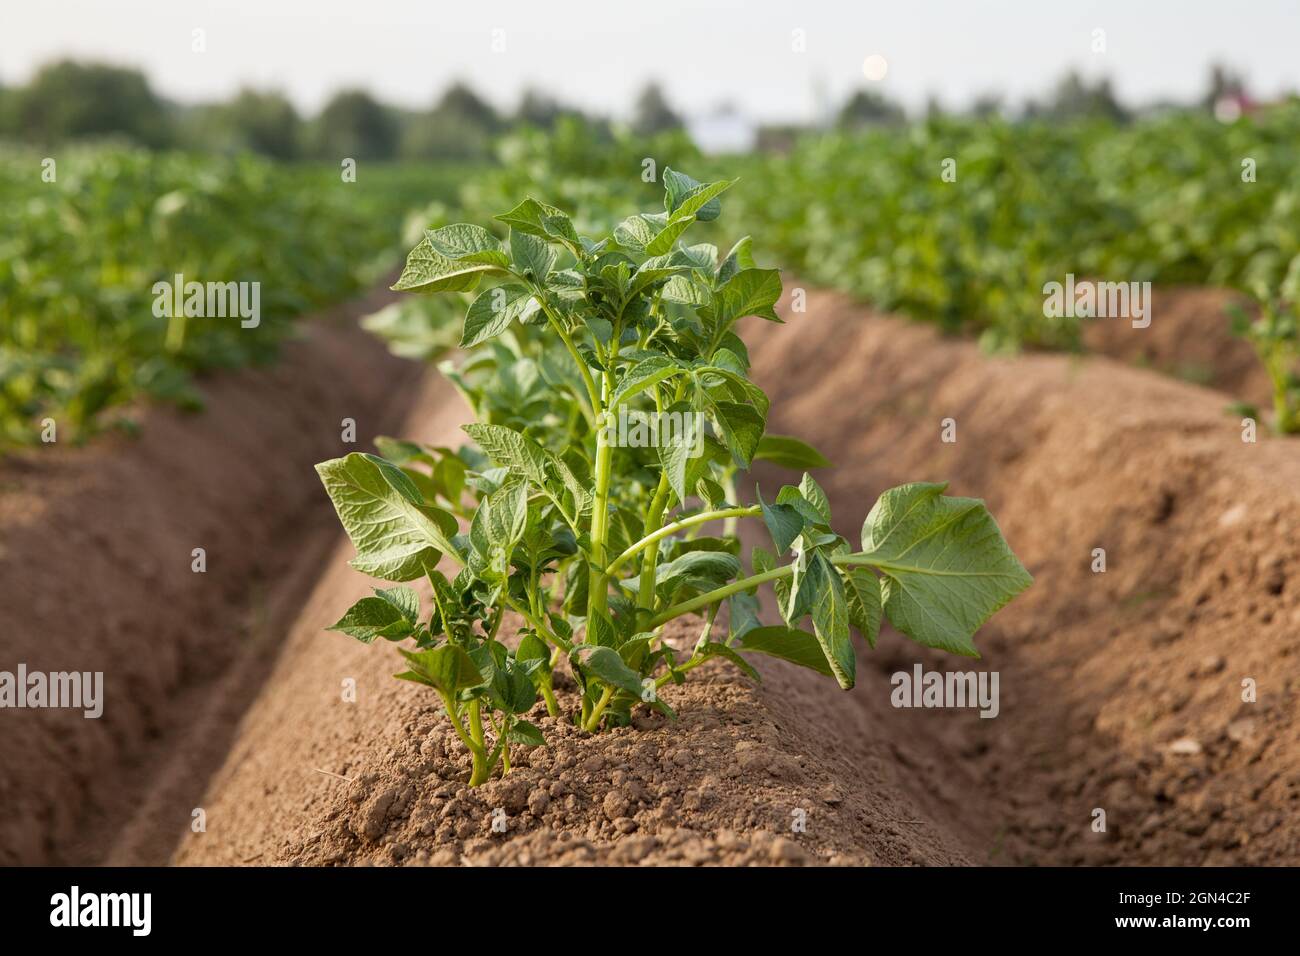 Reihen von Kartoffeln auf dem Bauernhof Feld. Anbau von Kartoffeln in Russland. Landschaft mit landwirtschaftlichen Feldern bei sonnigem Wetter. Landschaft mit Agricultura Stockfoto